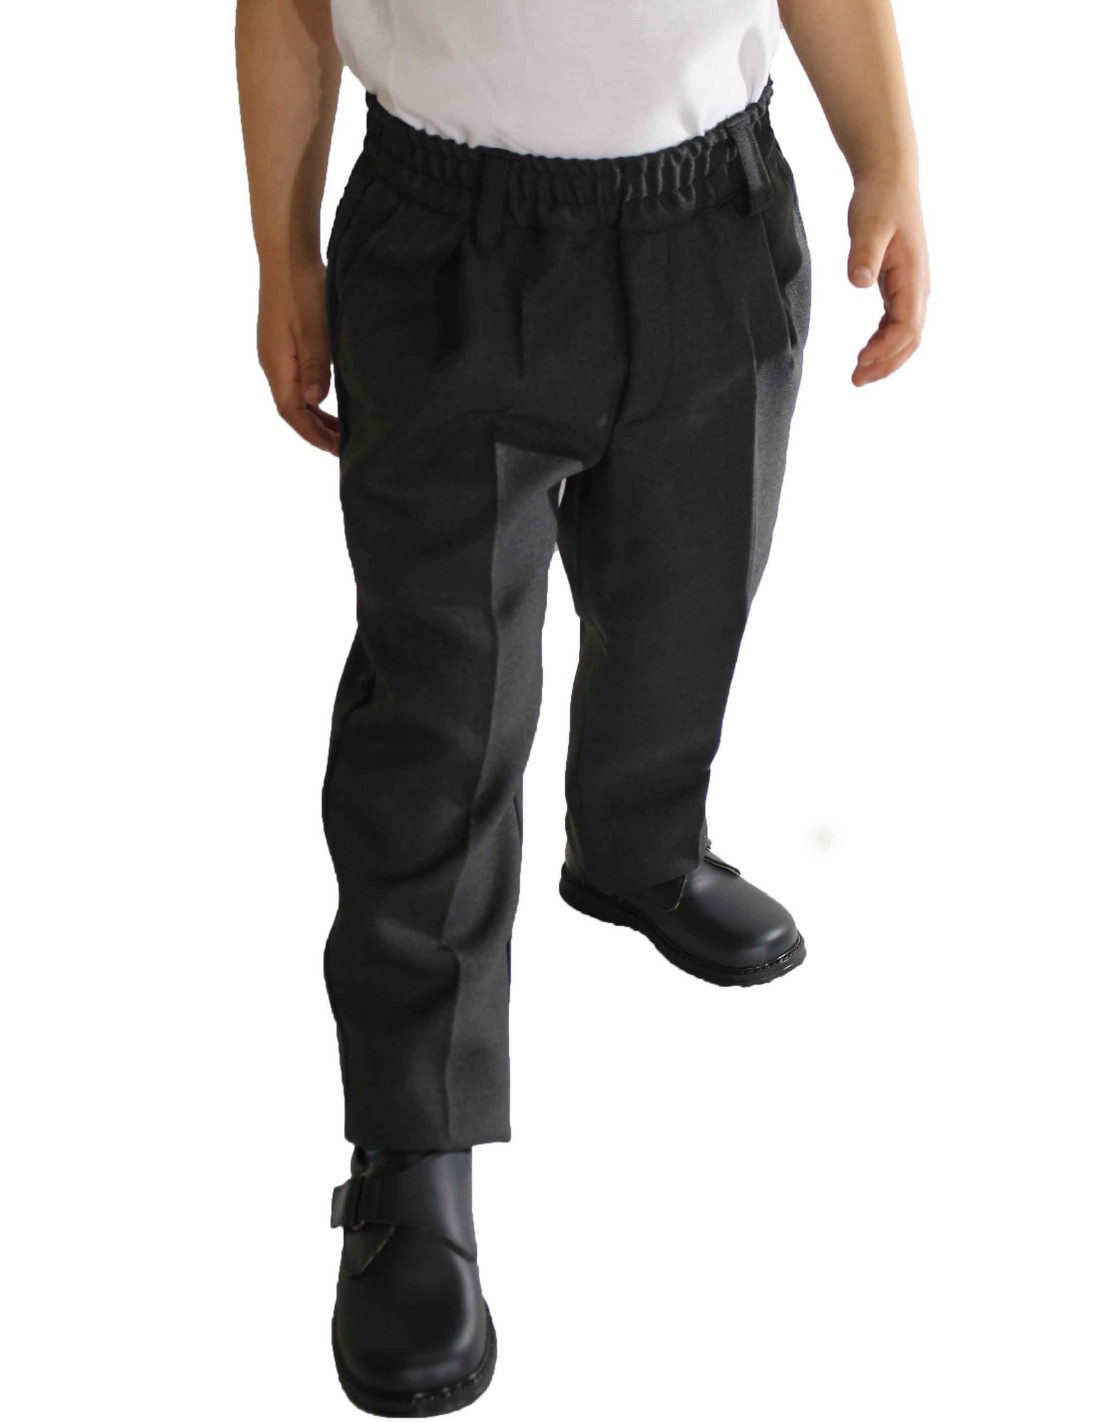 Pantalones clásicos con confección efecto encaje Negro | Missoni